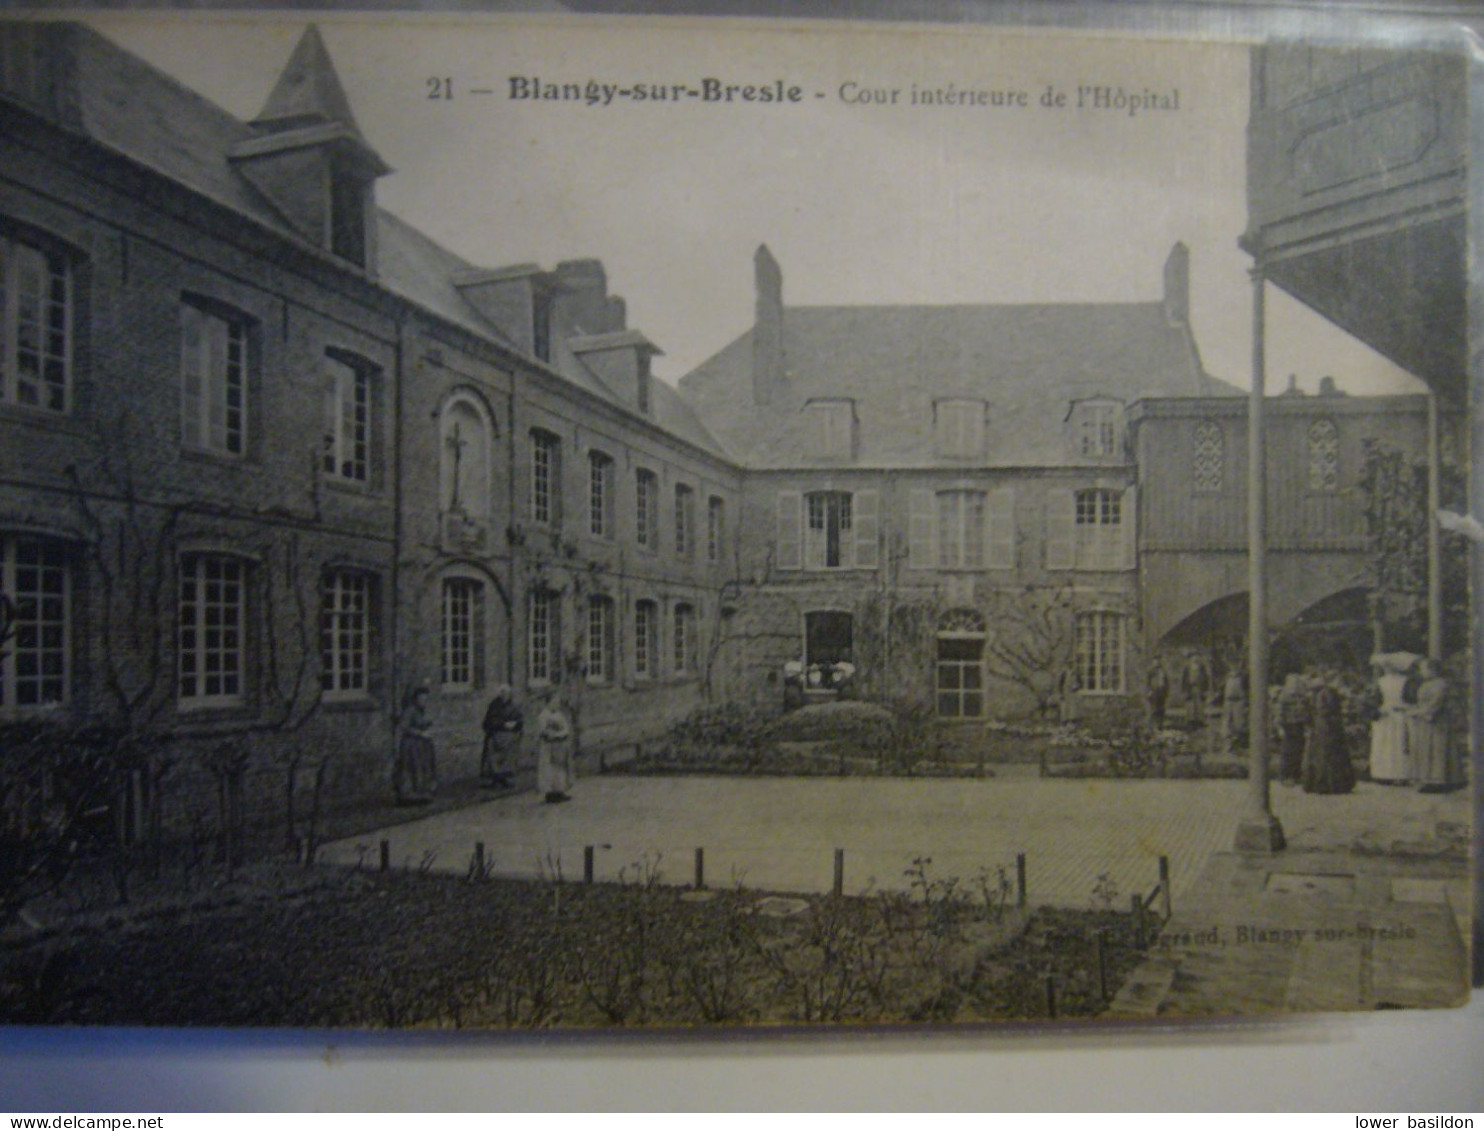 Hôpital - Blangy-sur-Bresle